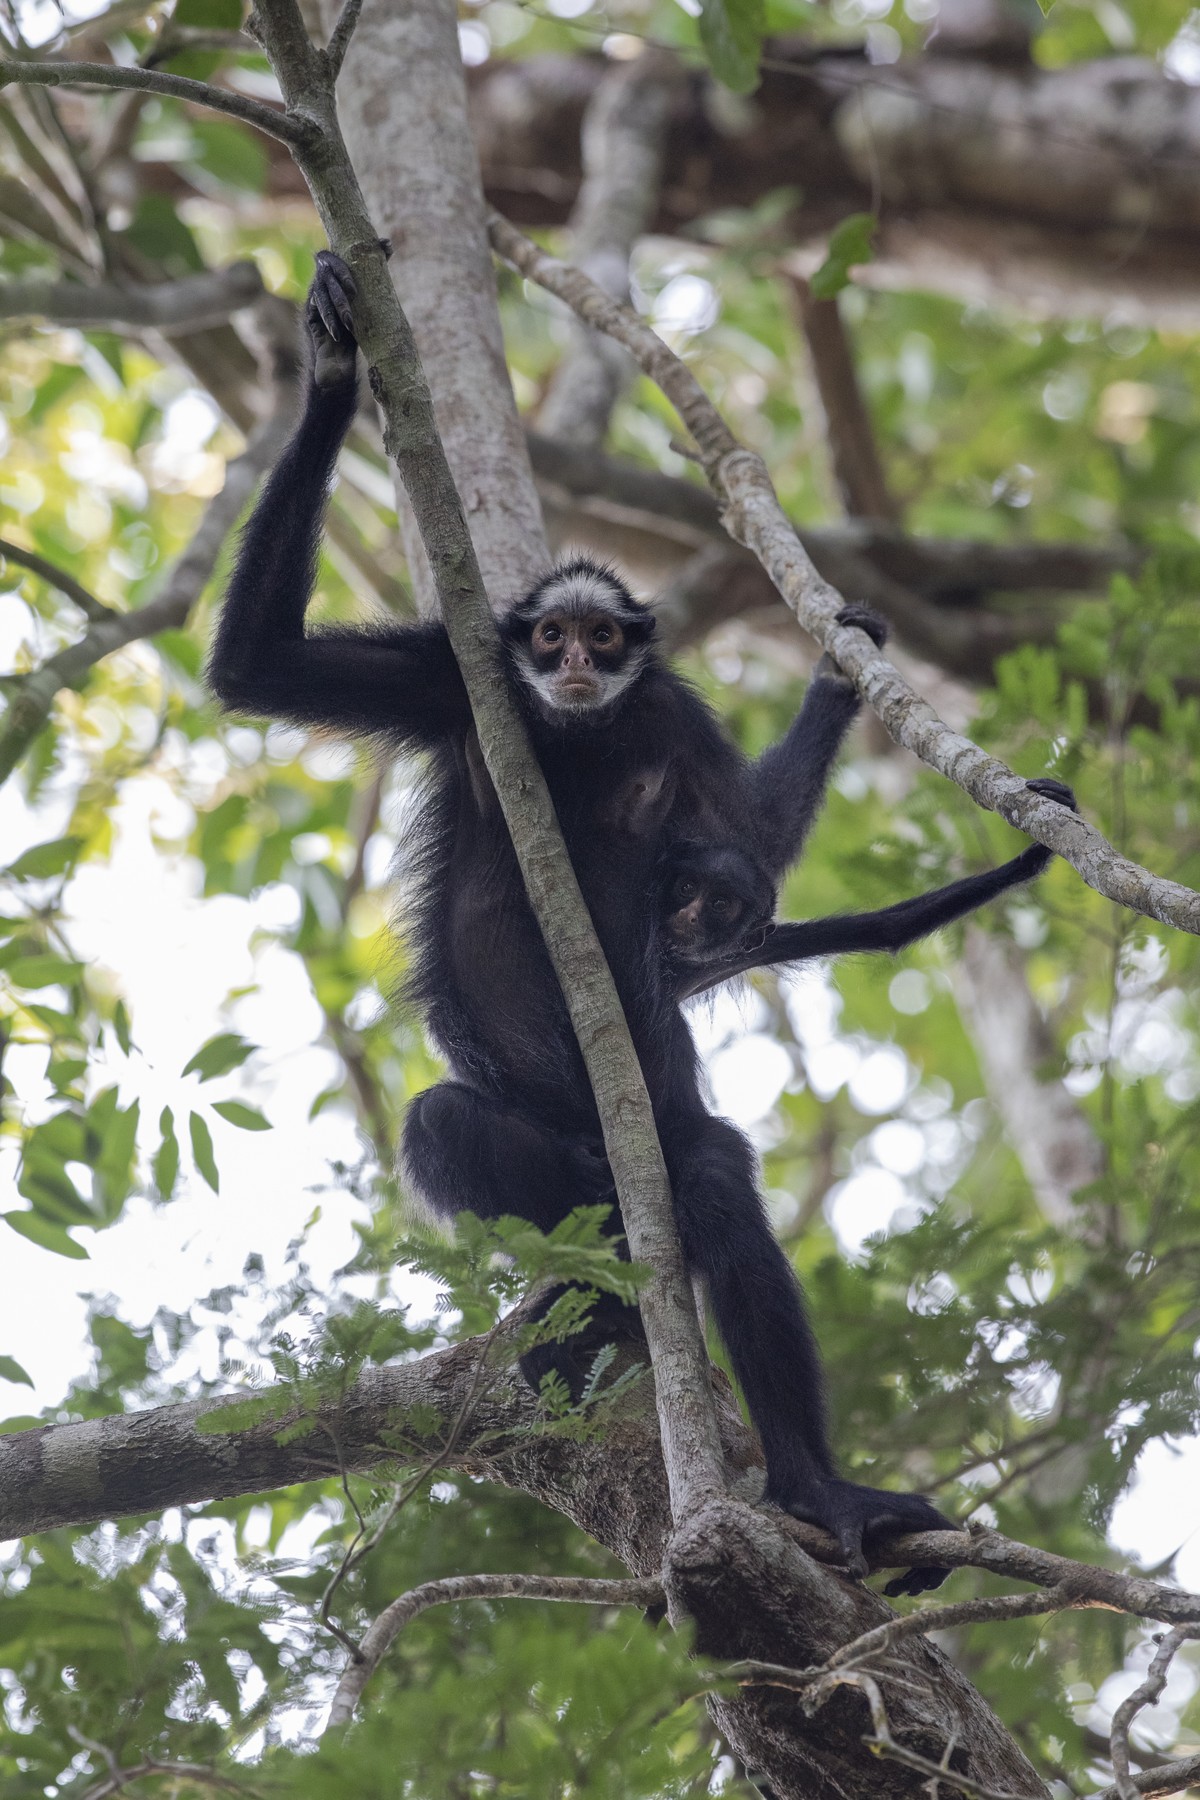 Macacos-aranha do Brasil vivem na Amazônia e correm risco de extinção, Terra da Gente